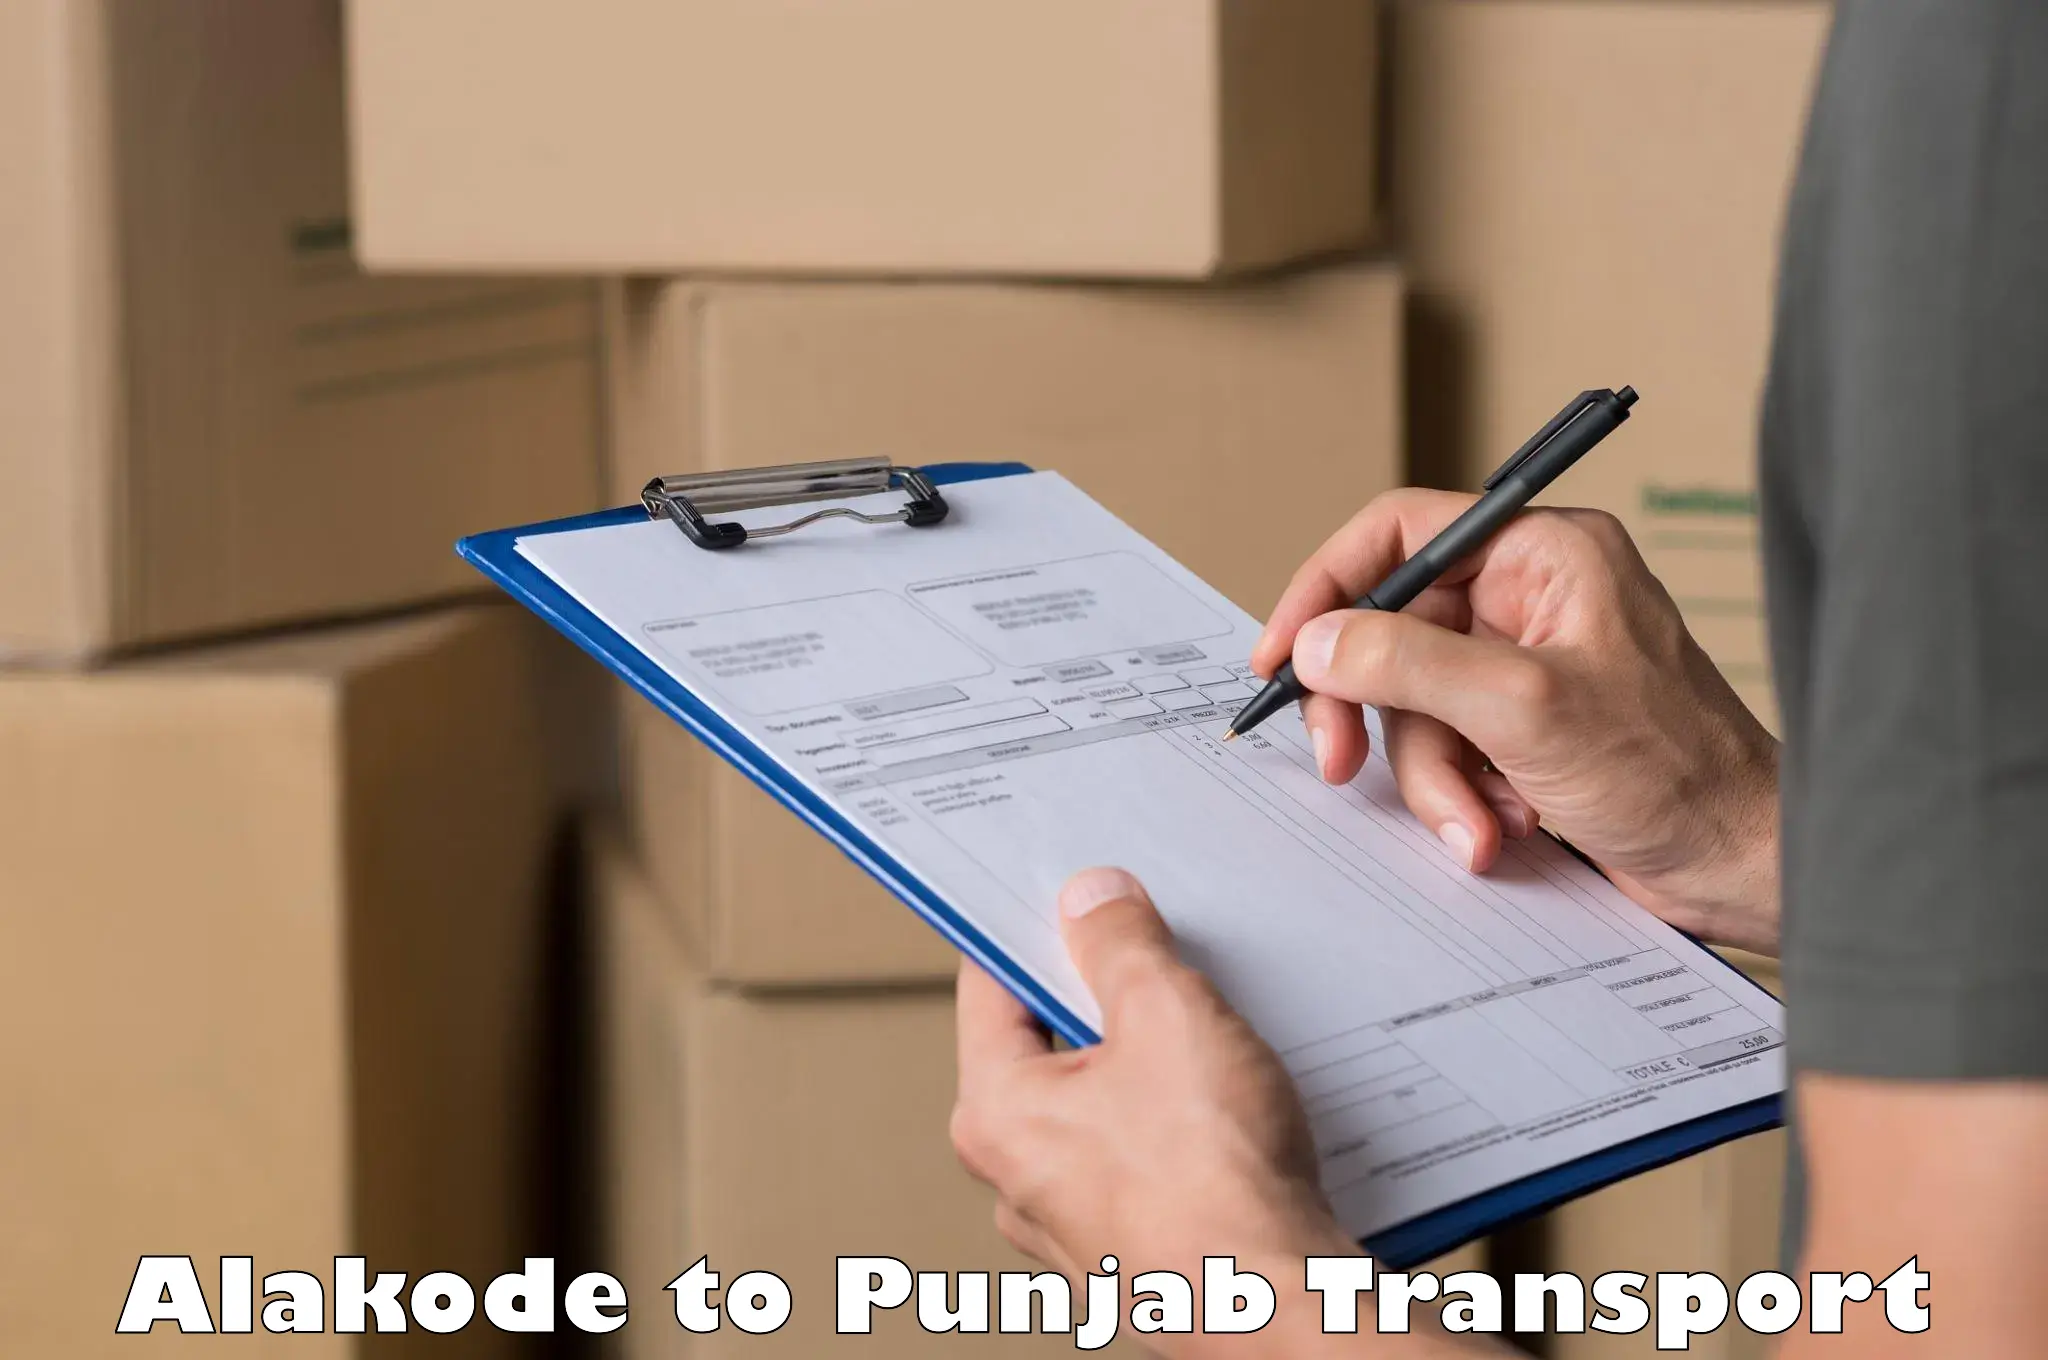 Two wheeler transport services Alakode to Punjab